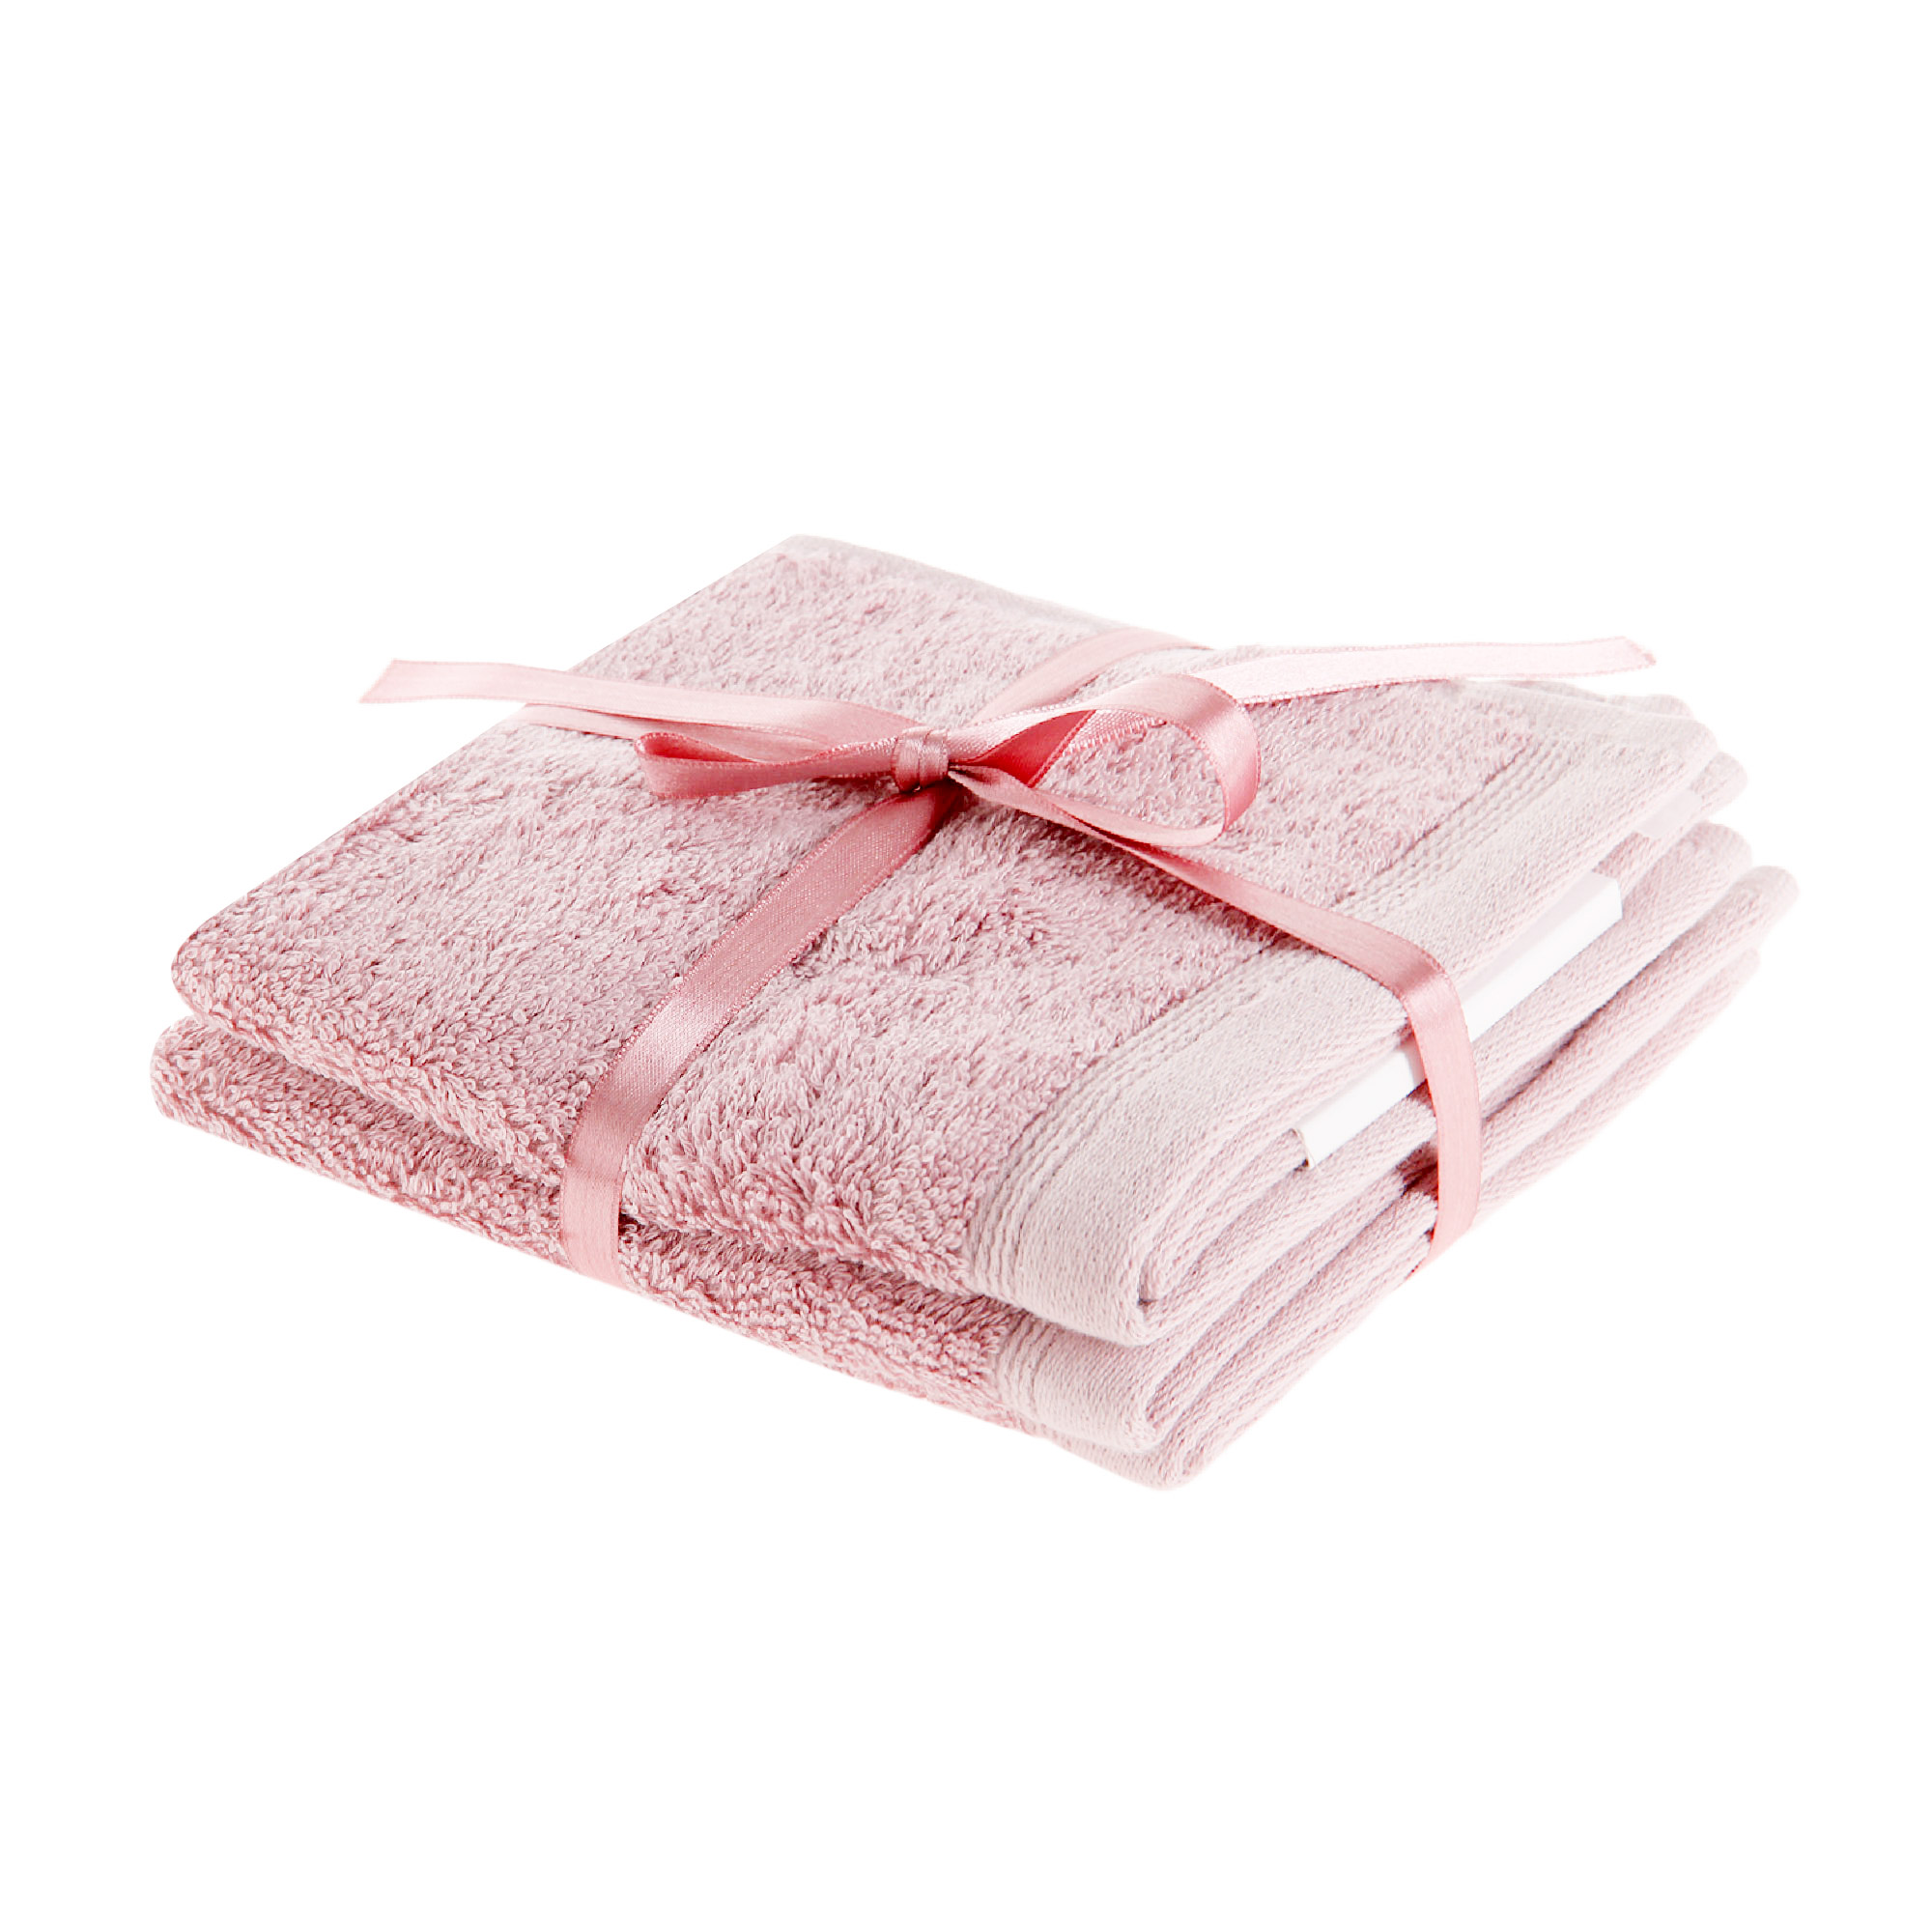 Комплект салфеток Togas Пуатье розовый 30x30 см 3 шт салфетки для маникюра безворсовые 50 шт 6 × 4 см розовый